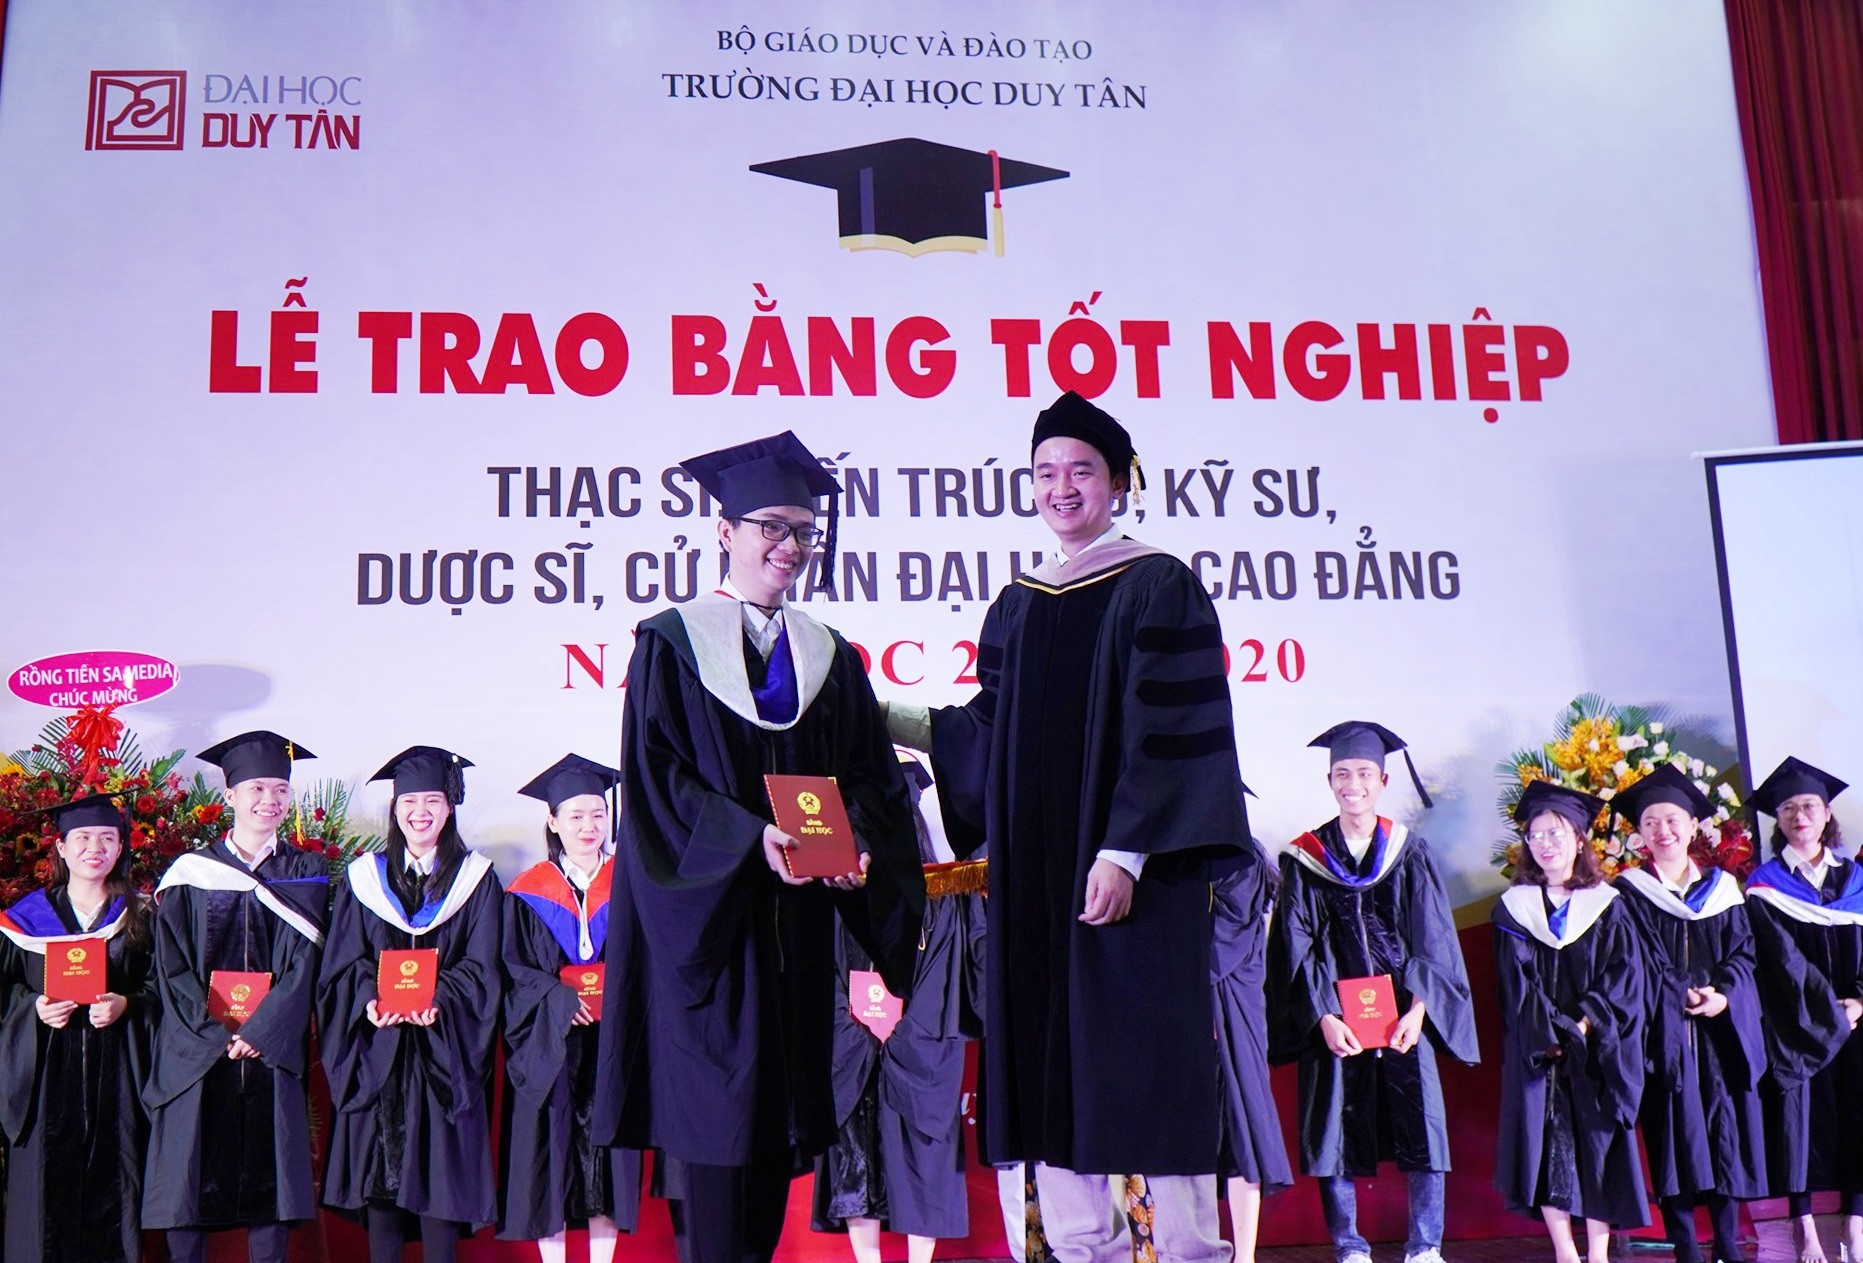 TS.Lê Nguyên Bảo -Hiệu trưởng DTU trao bằng tốt nghiệp cho các tân thạc sĩ, dược sĩ, kiến trúc sư, cử nhân năm học 2019-2020